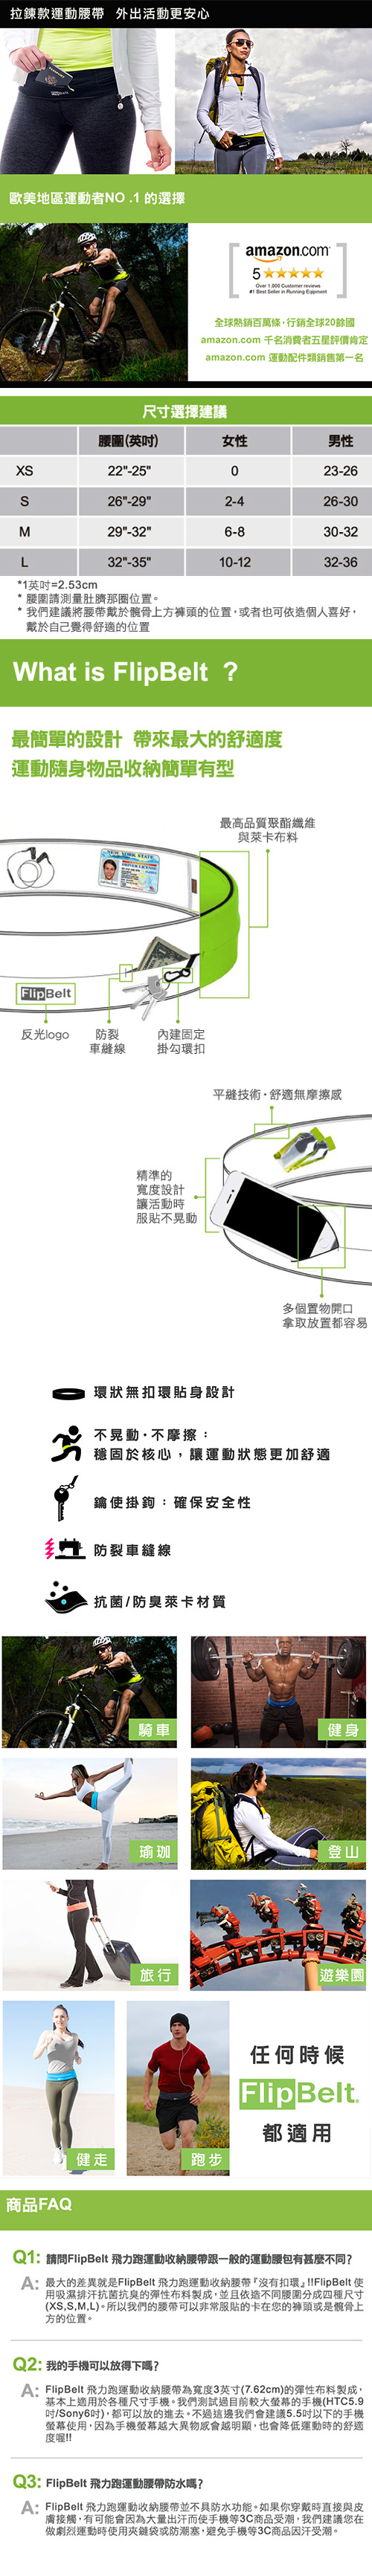 FlipBelt 飛力跑運動收納腰帶 拉鍊款 桃紅 (XS)